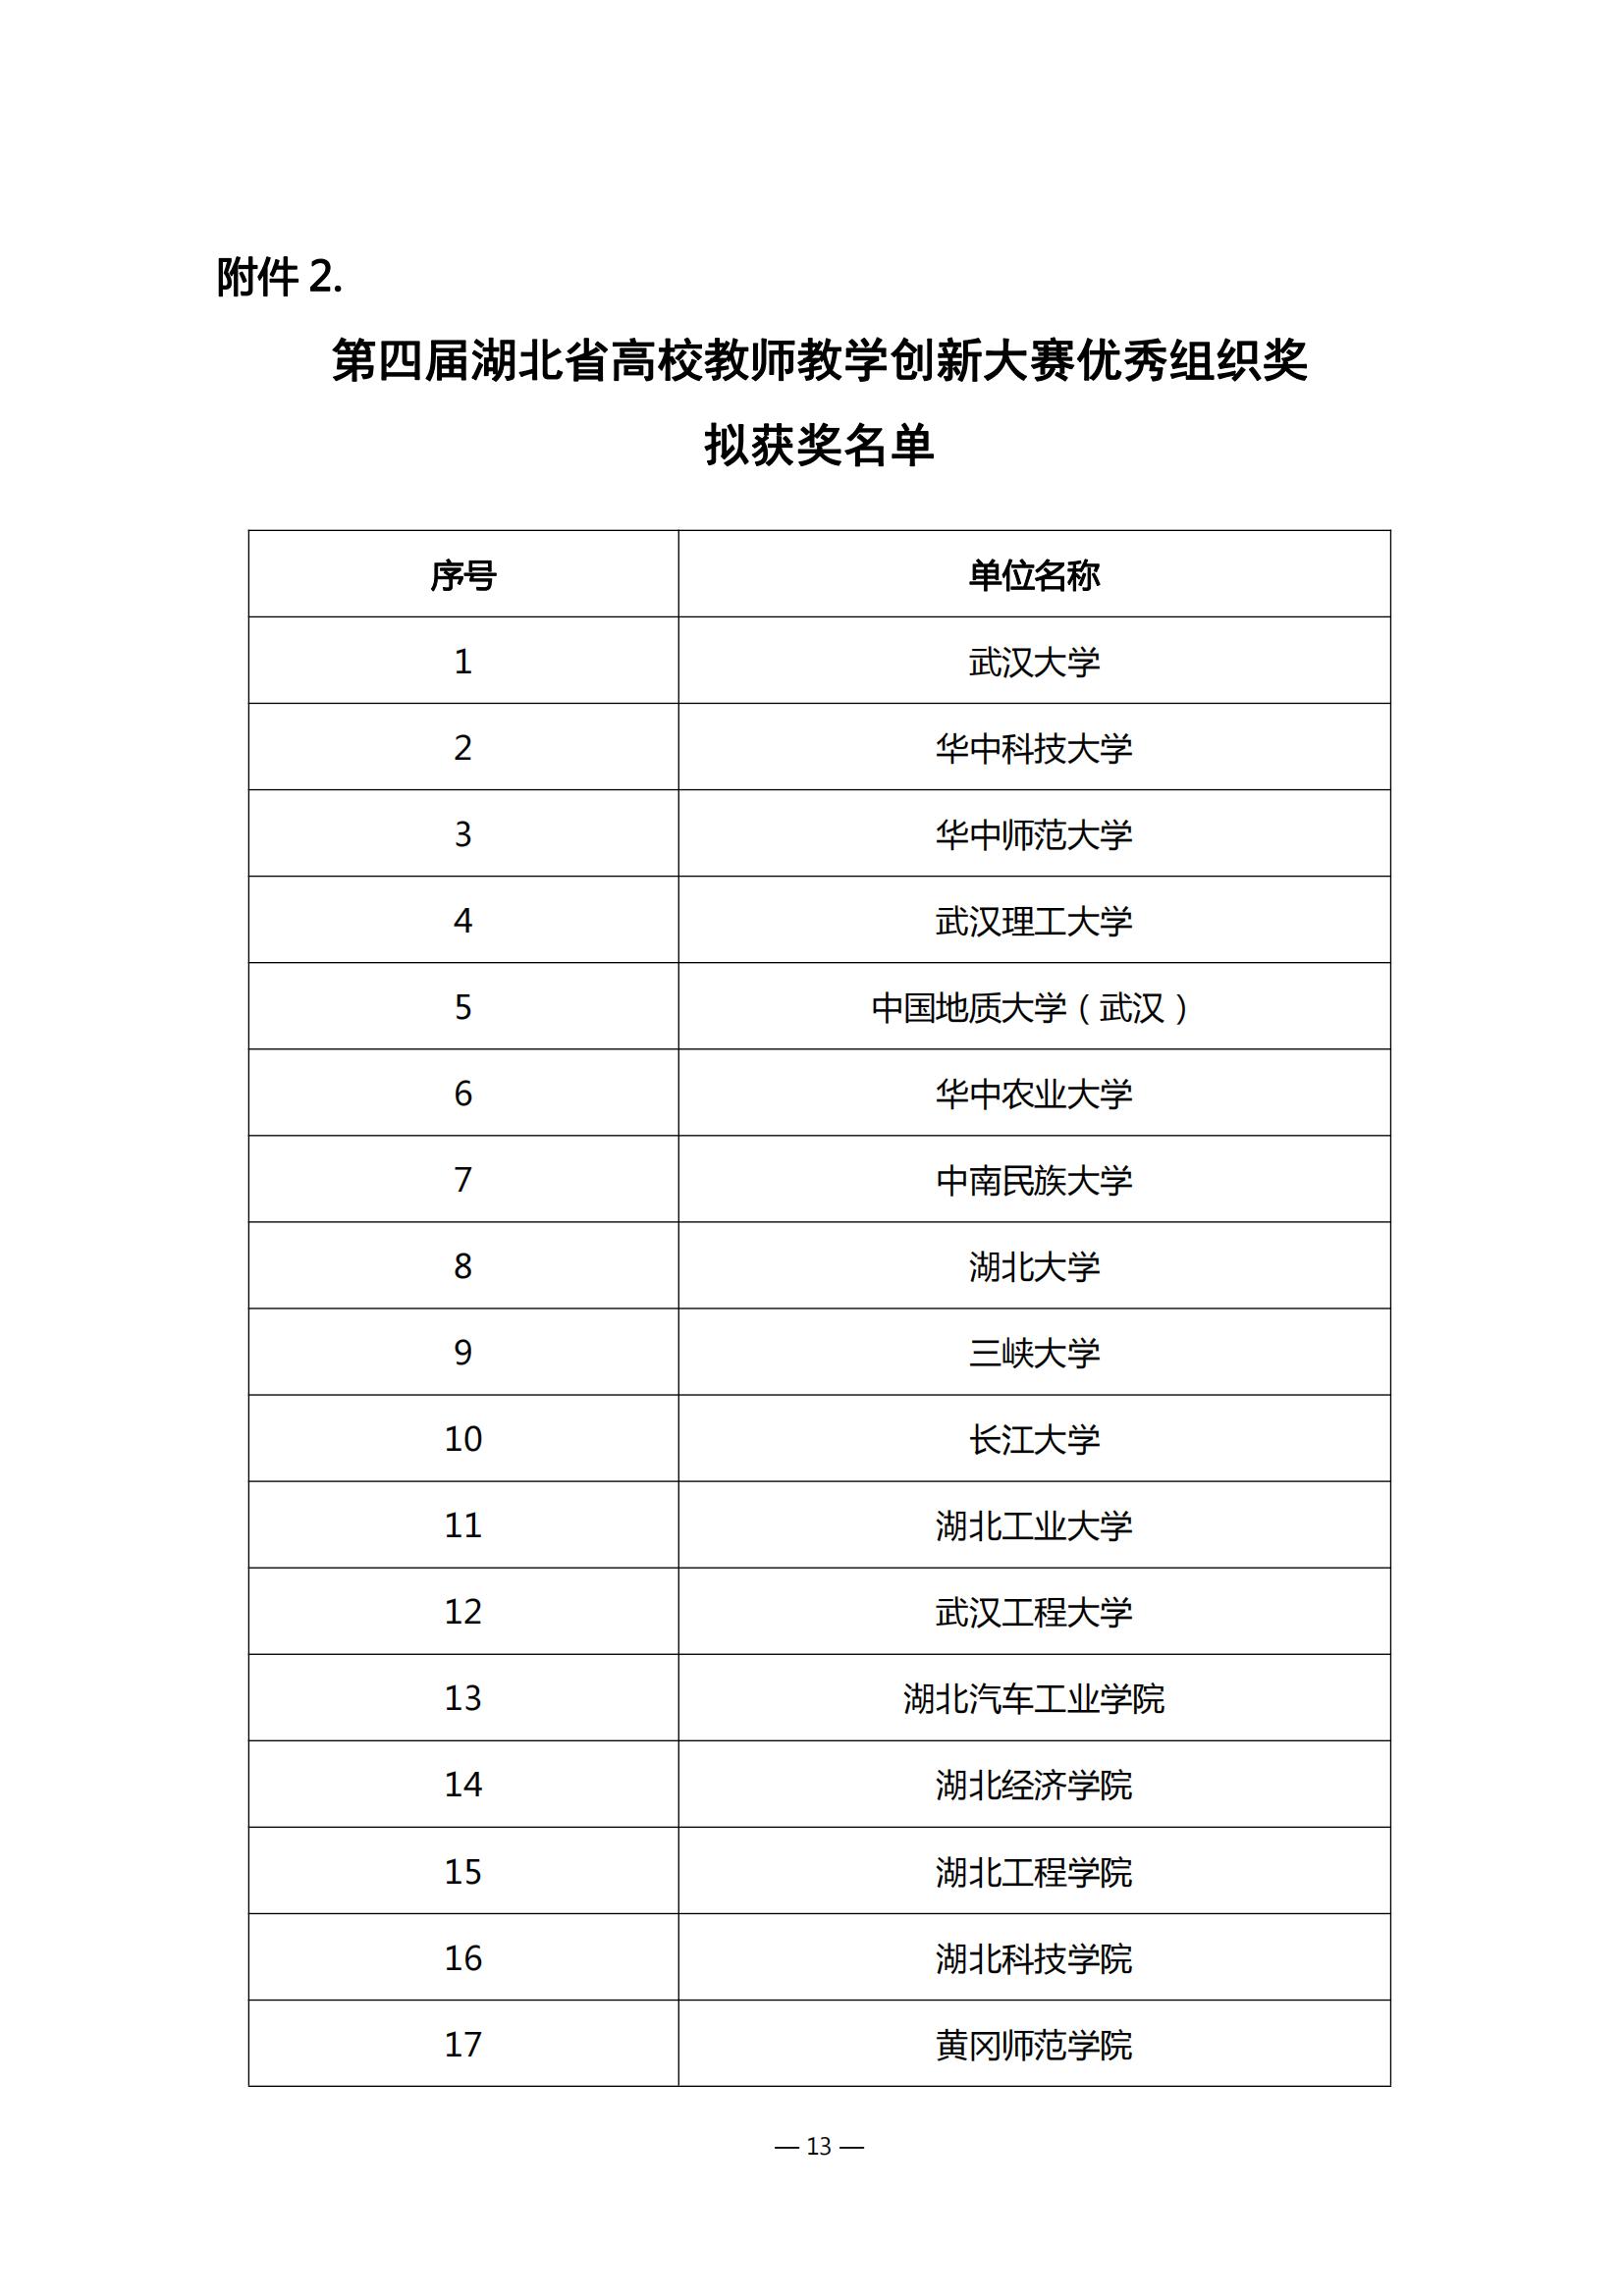 第四届湖北省高校教师教学创新大赛评审结果公示_12.jpg